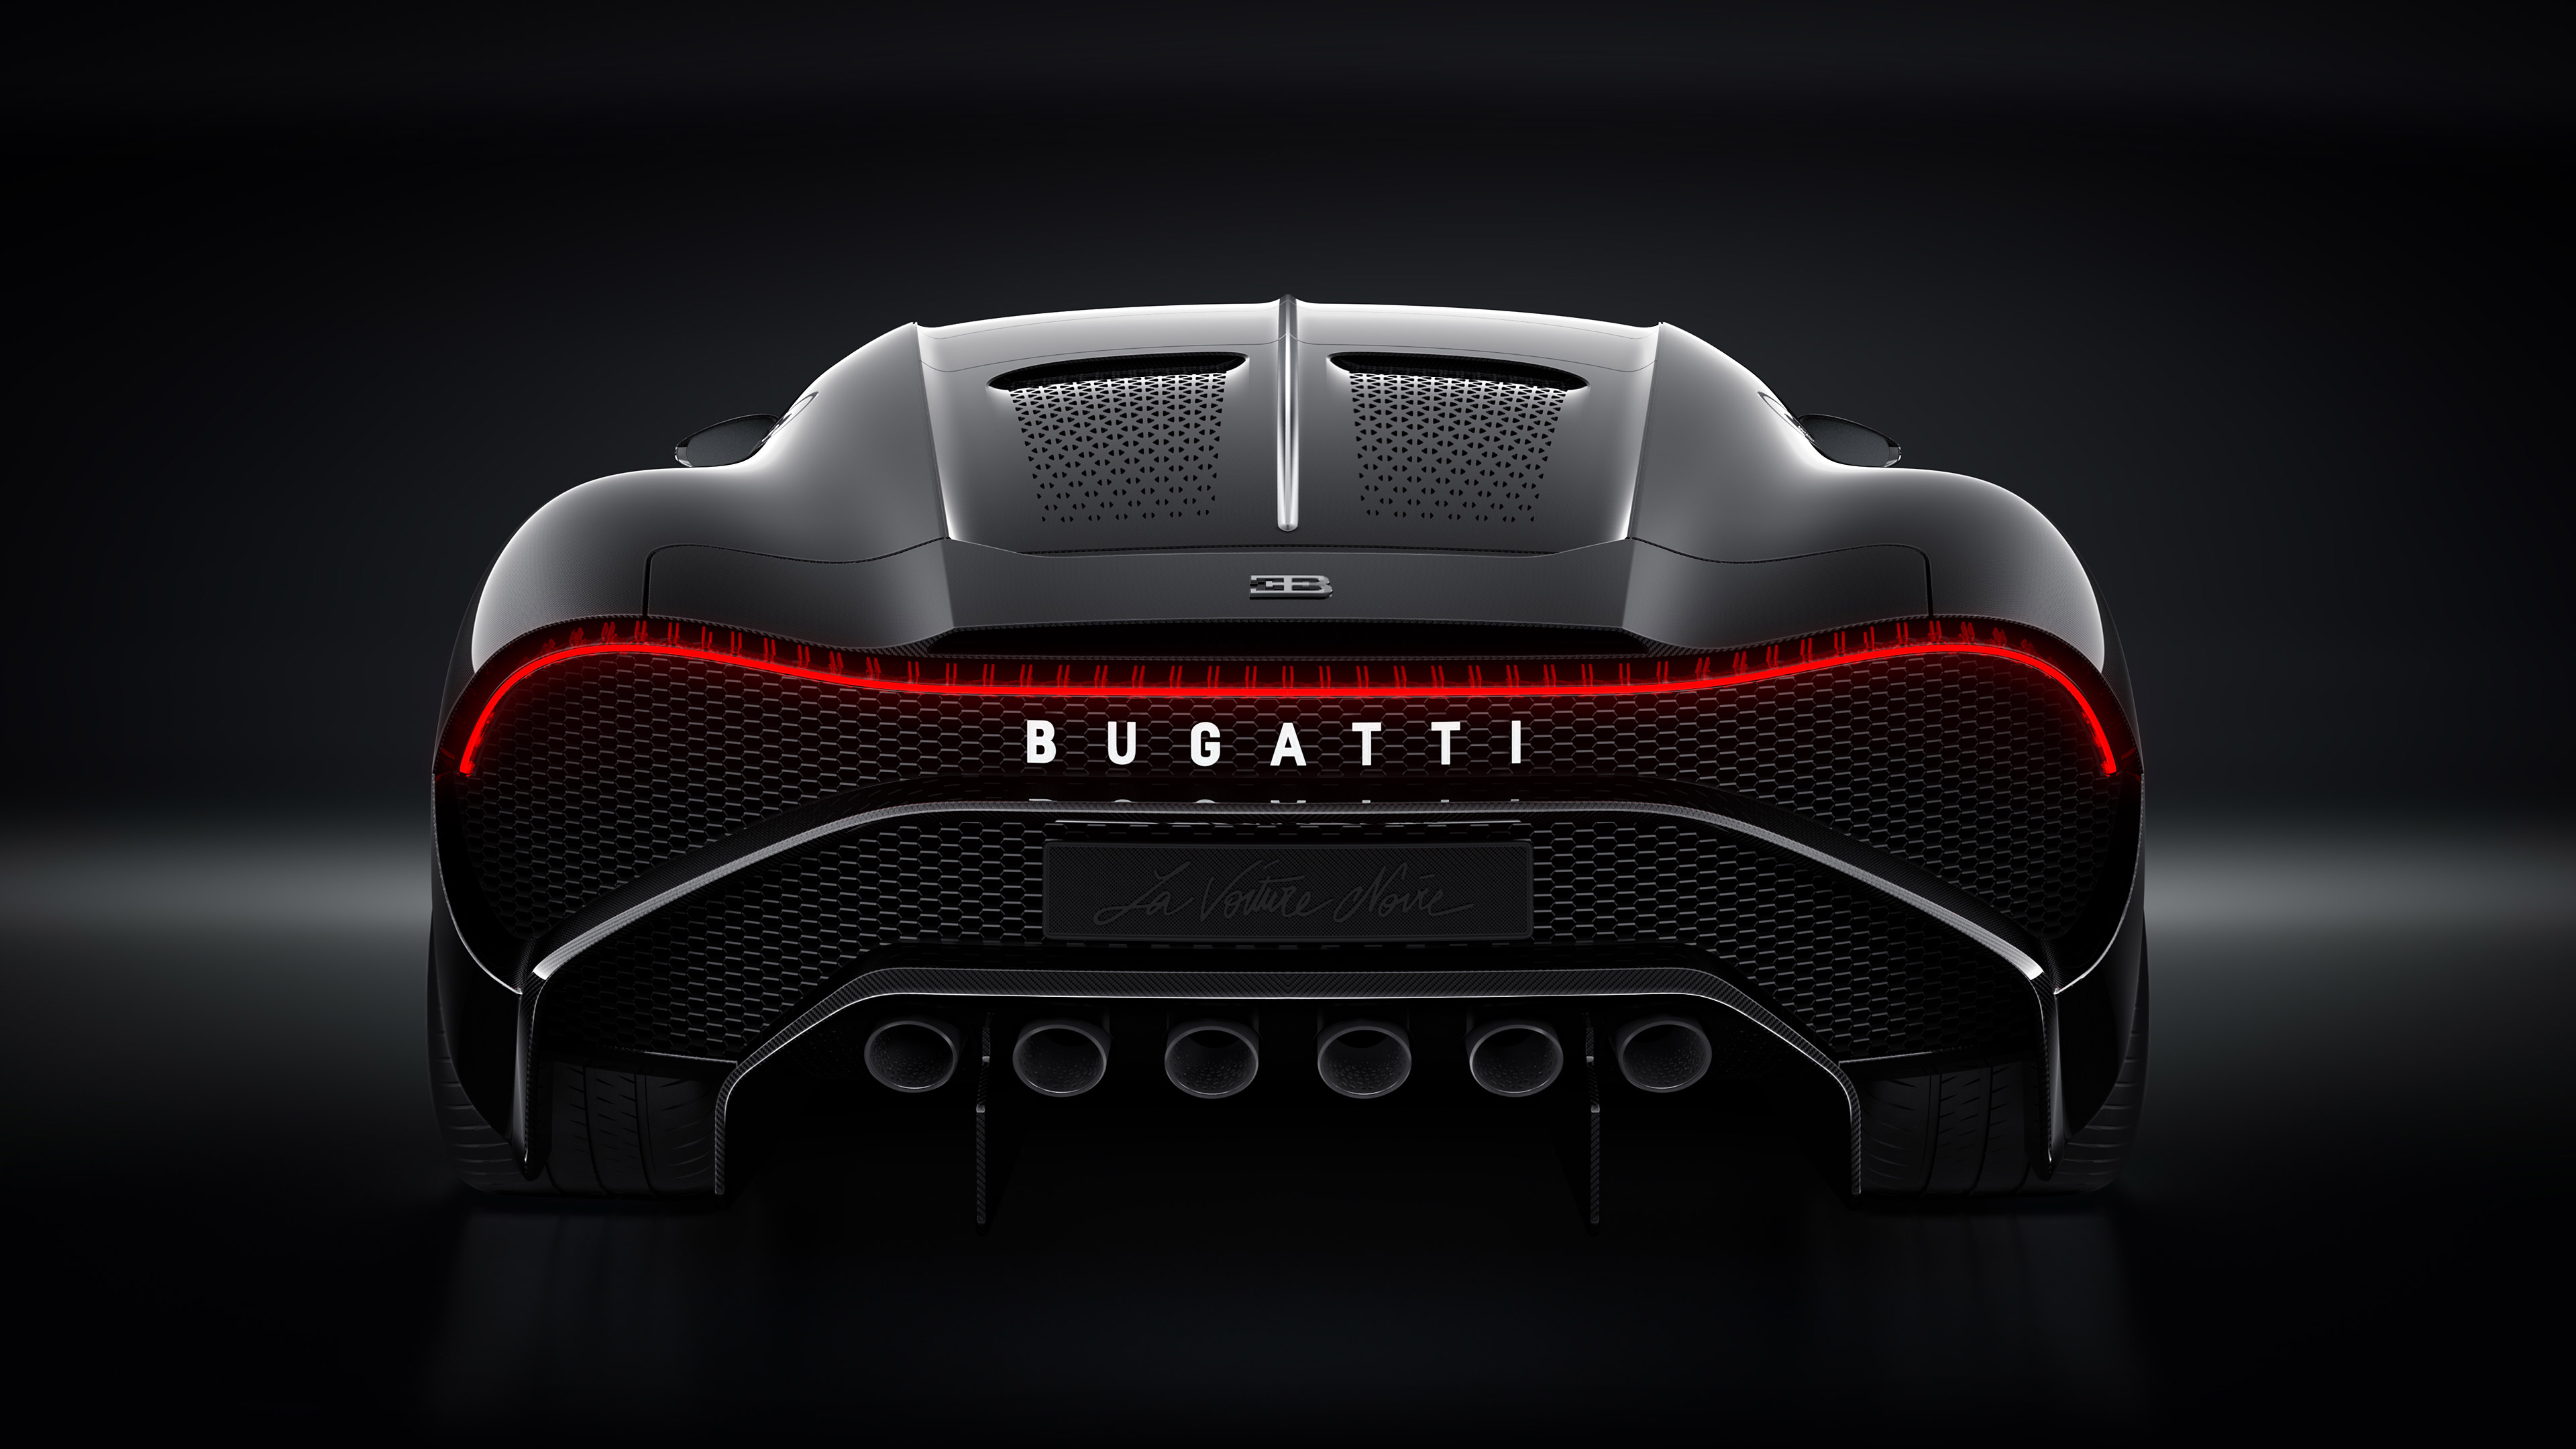  2019 Bugatti La Voiture Noire Wallpaper.